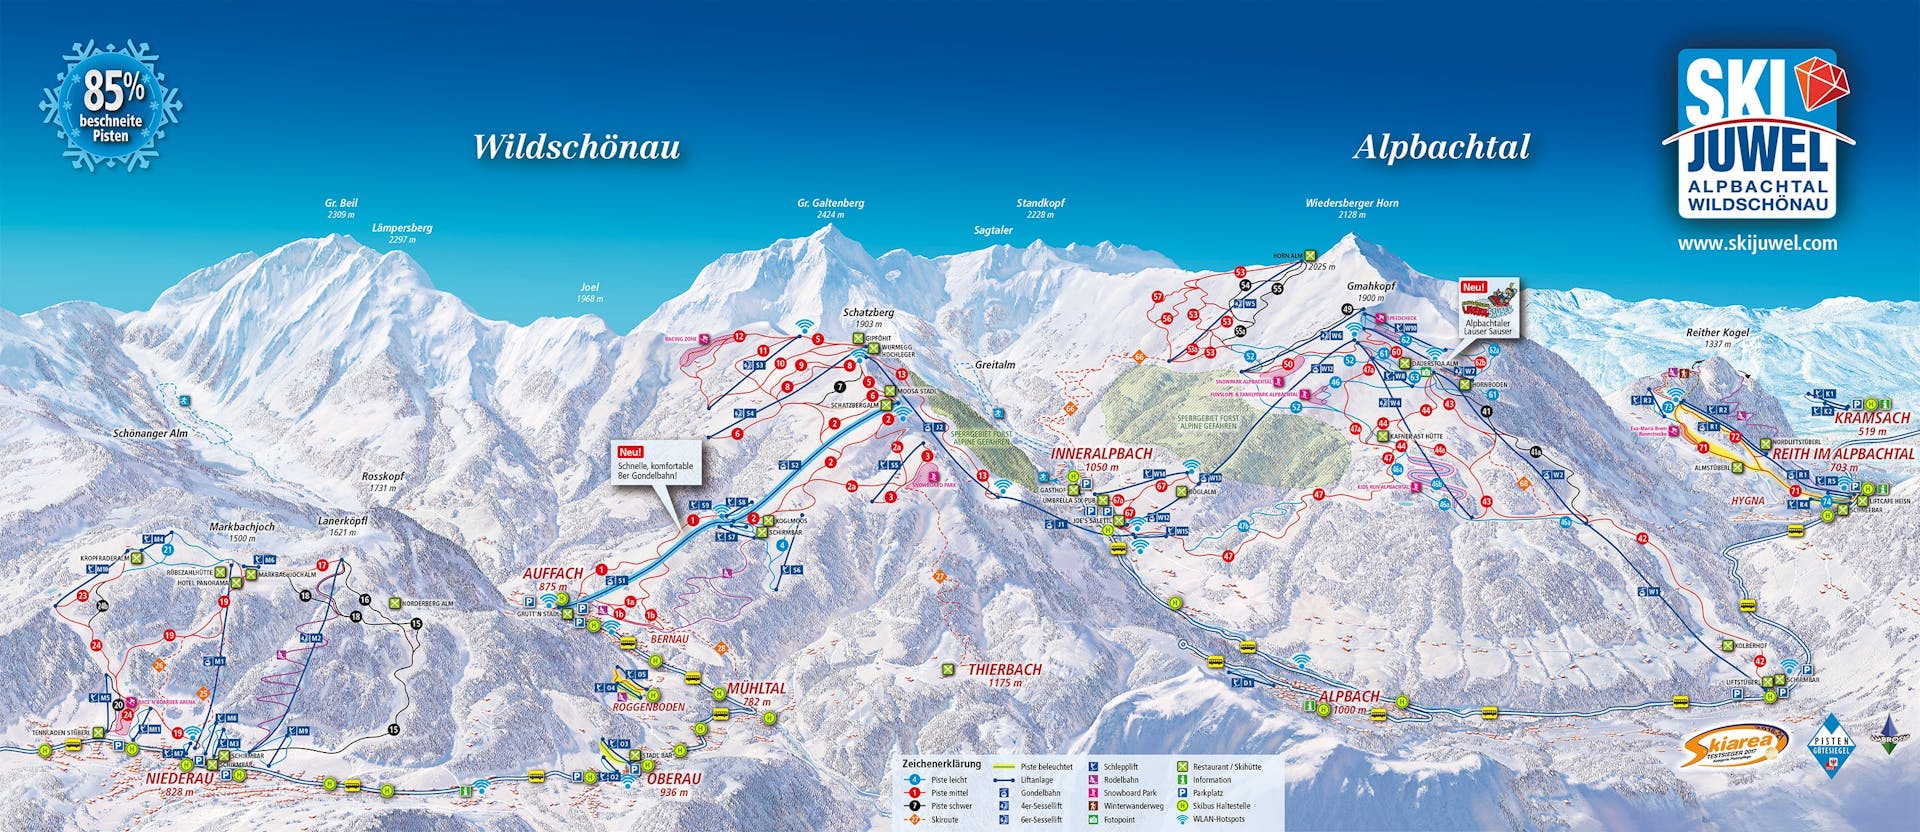 Auffach-Wildschonau ski map